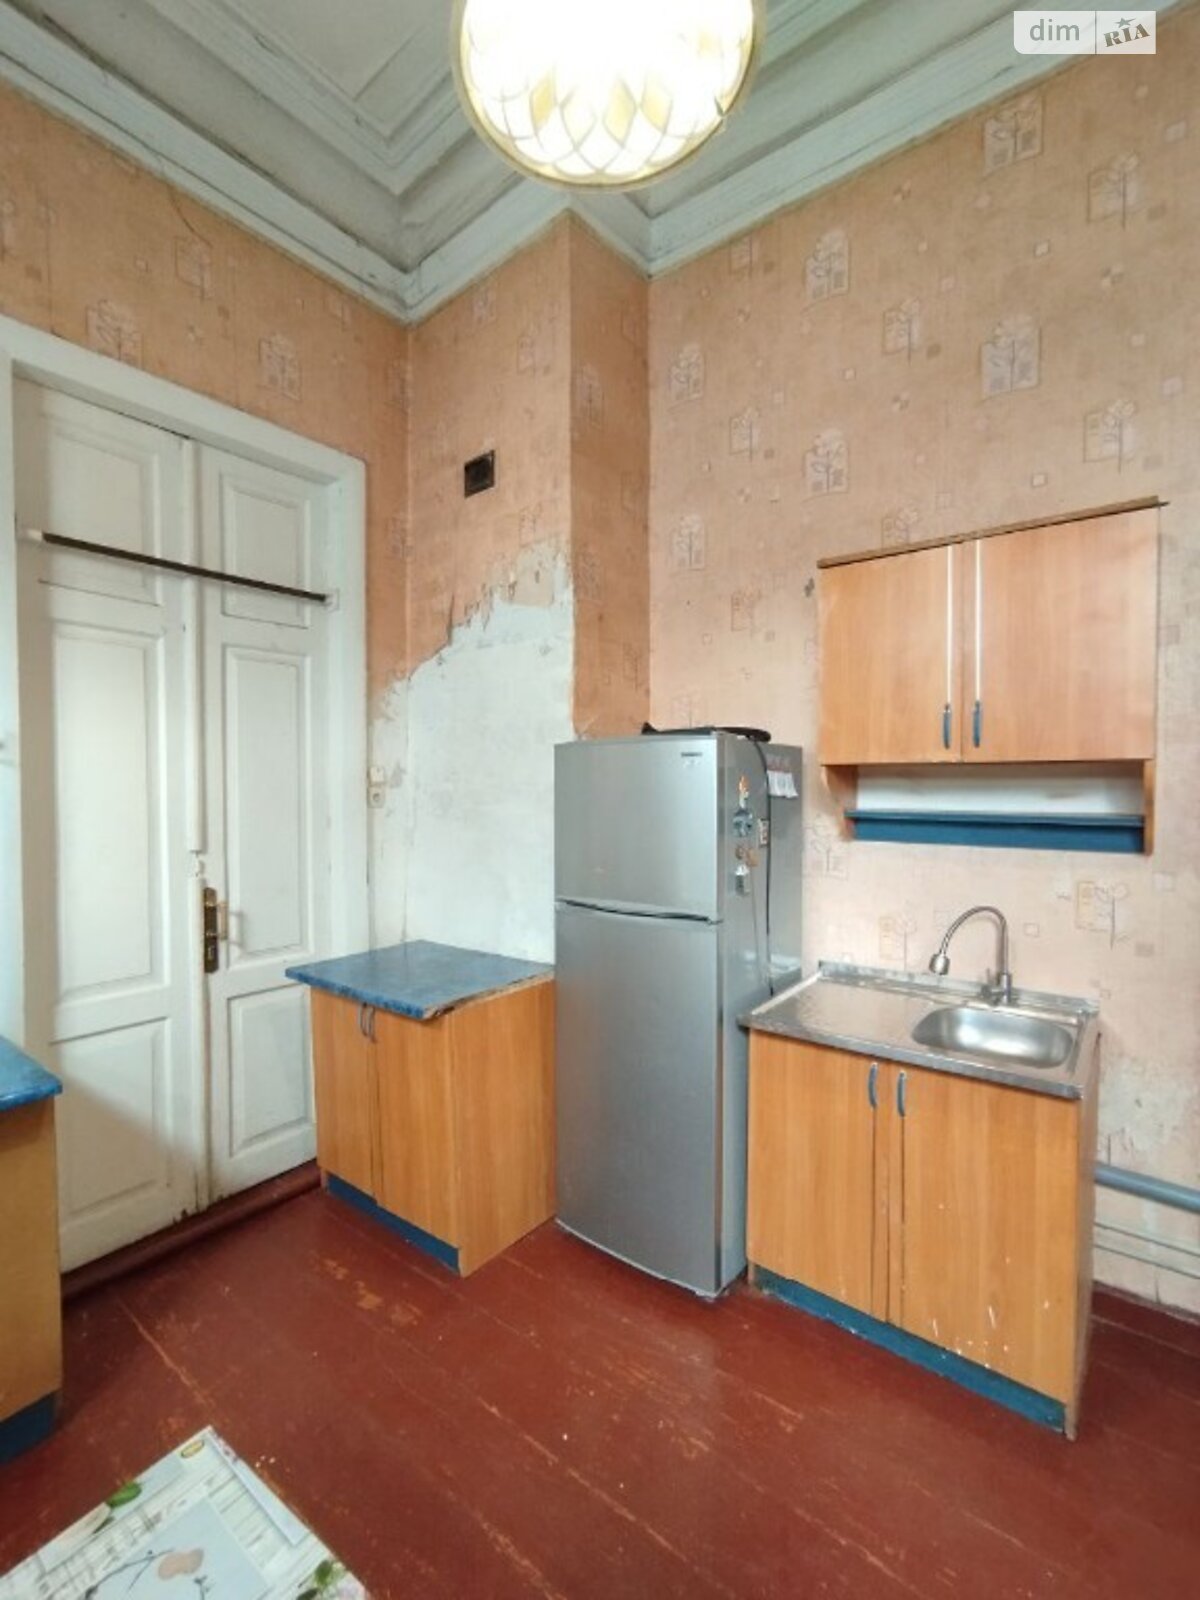 Продажа части дома в Днепре, район Чечеловка, 1 комната фото 1